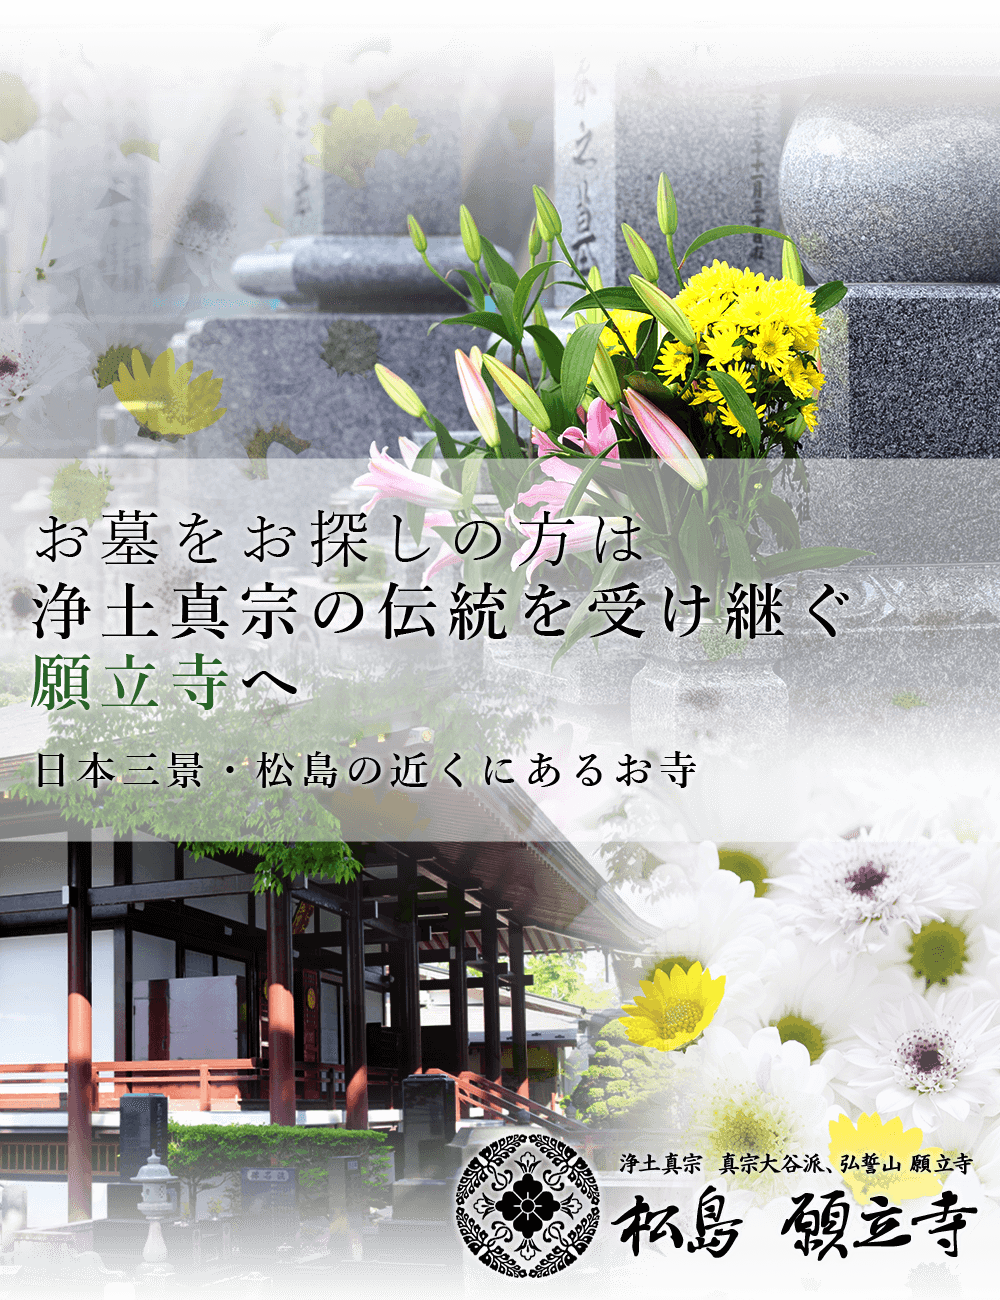 お墓をお探しの方は浄土真宗の伝統を受け継ぐ願立寺へ日本三景・松島の近くにあるお寺